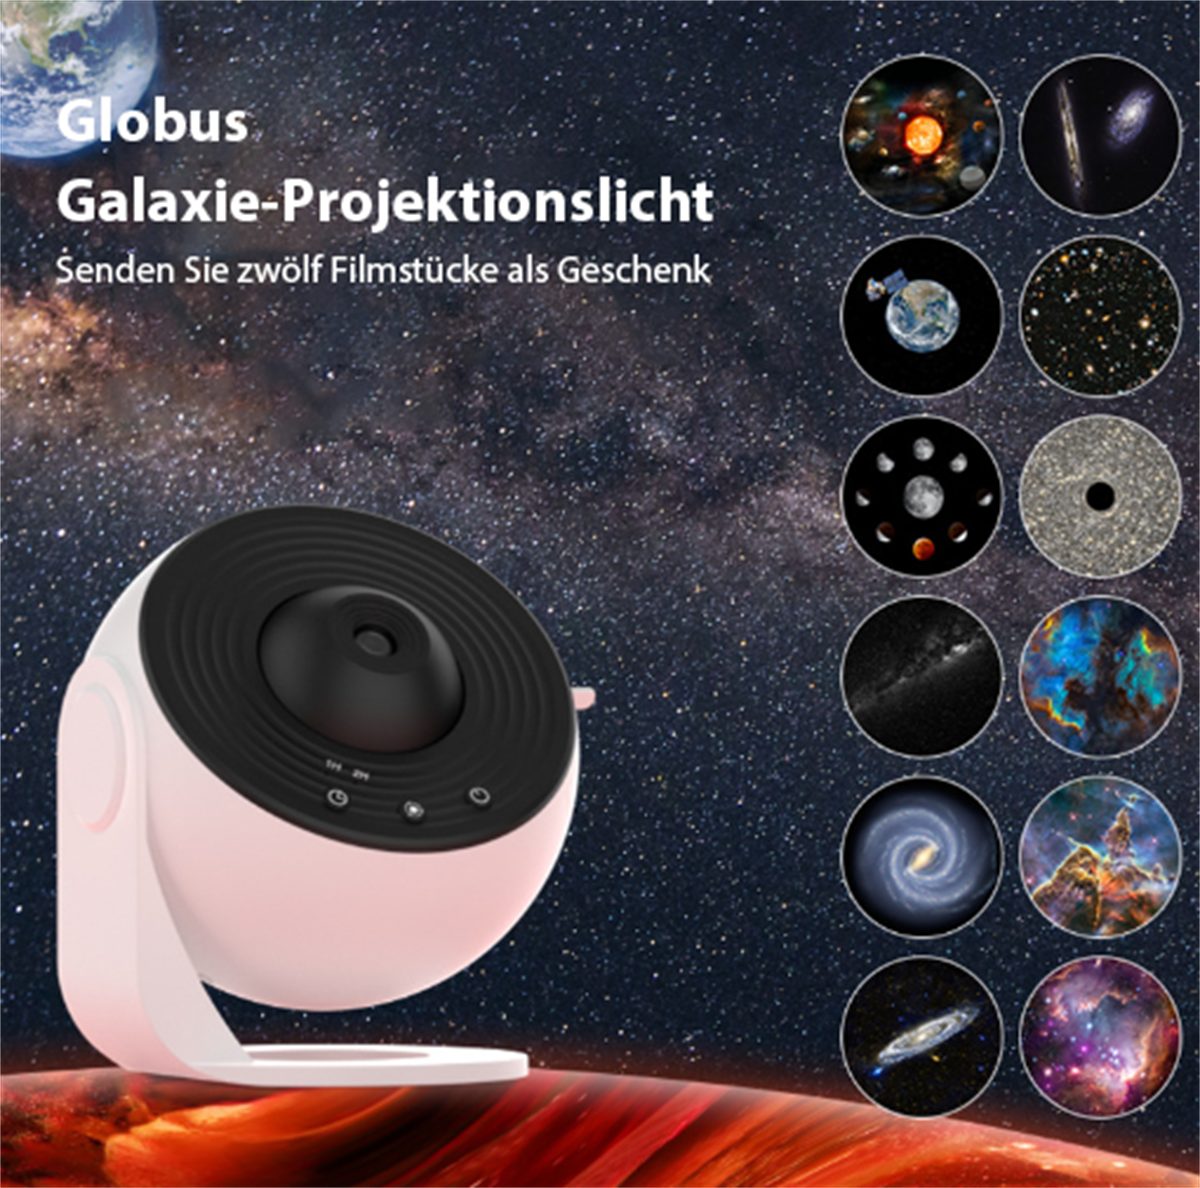 carefully selected LED Nachtlicht LED-Nachtlicht, und Weiß 13 Sternenhimmel- Filmsets Galaxienprojektion